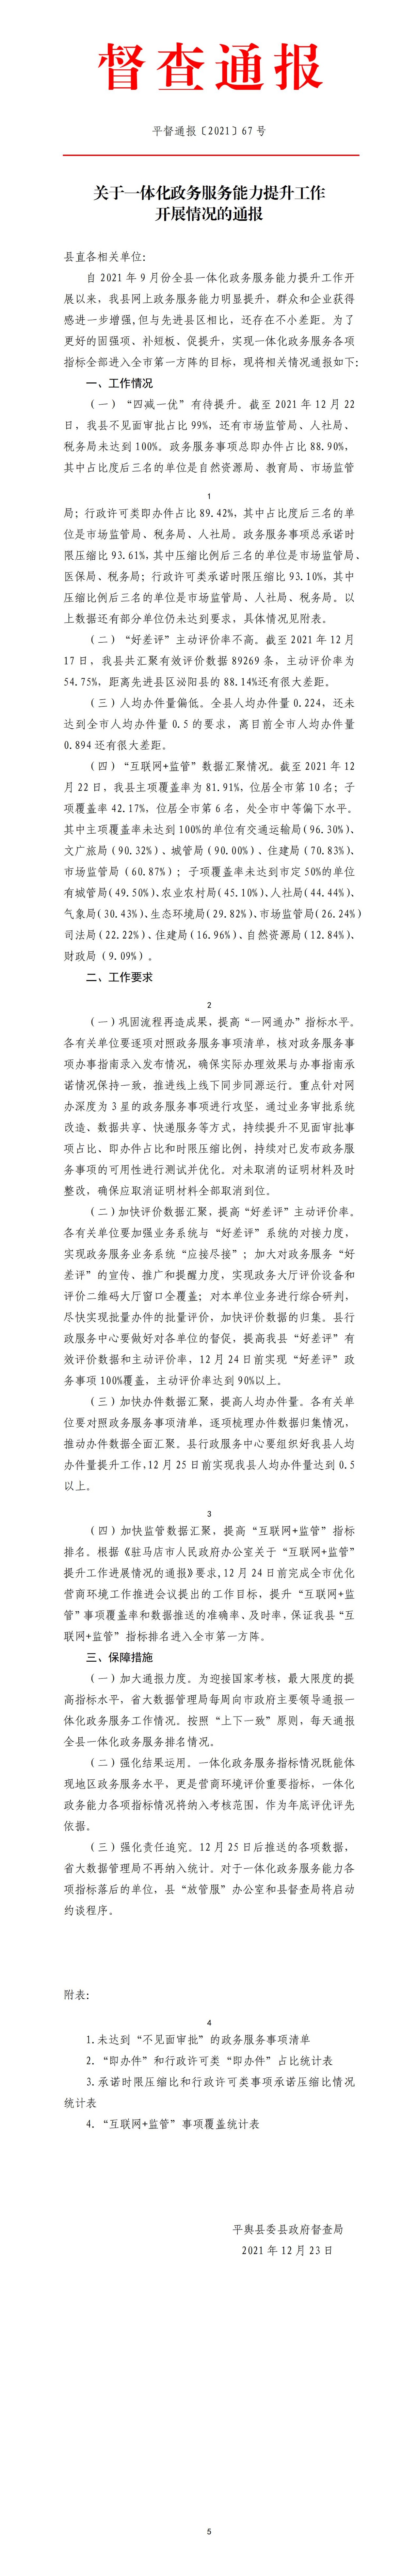 平督通报〔2021〕67号平舆县关于一体化政务服务能力提升工作的通报_01.jpg